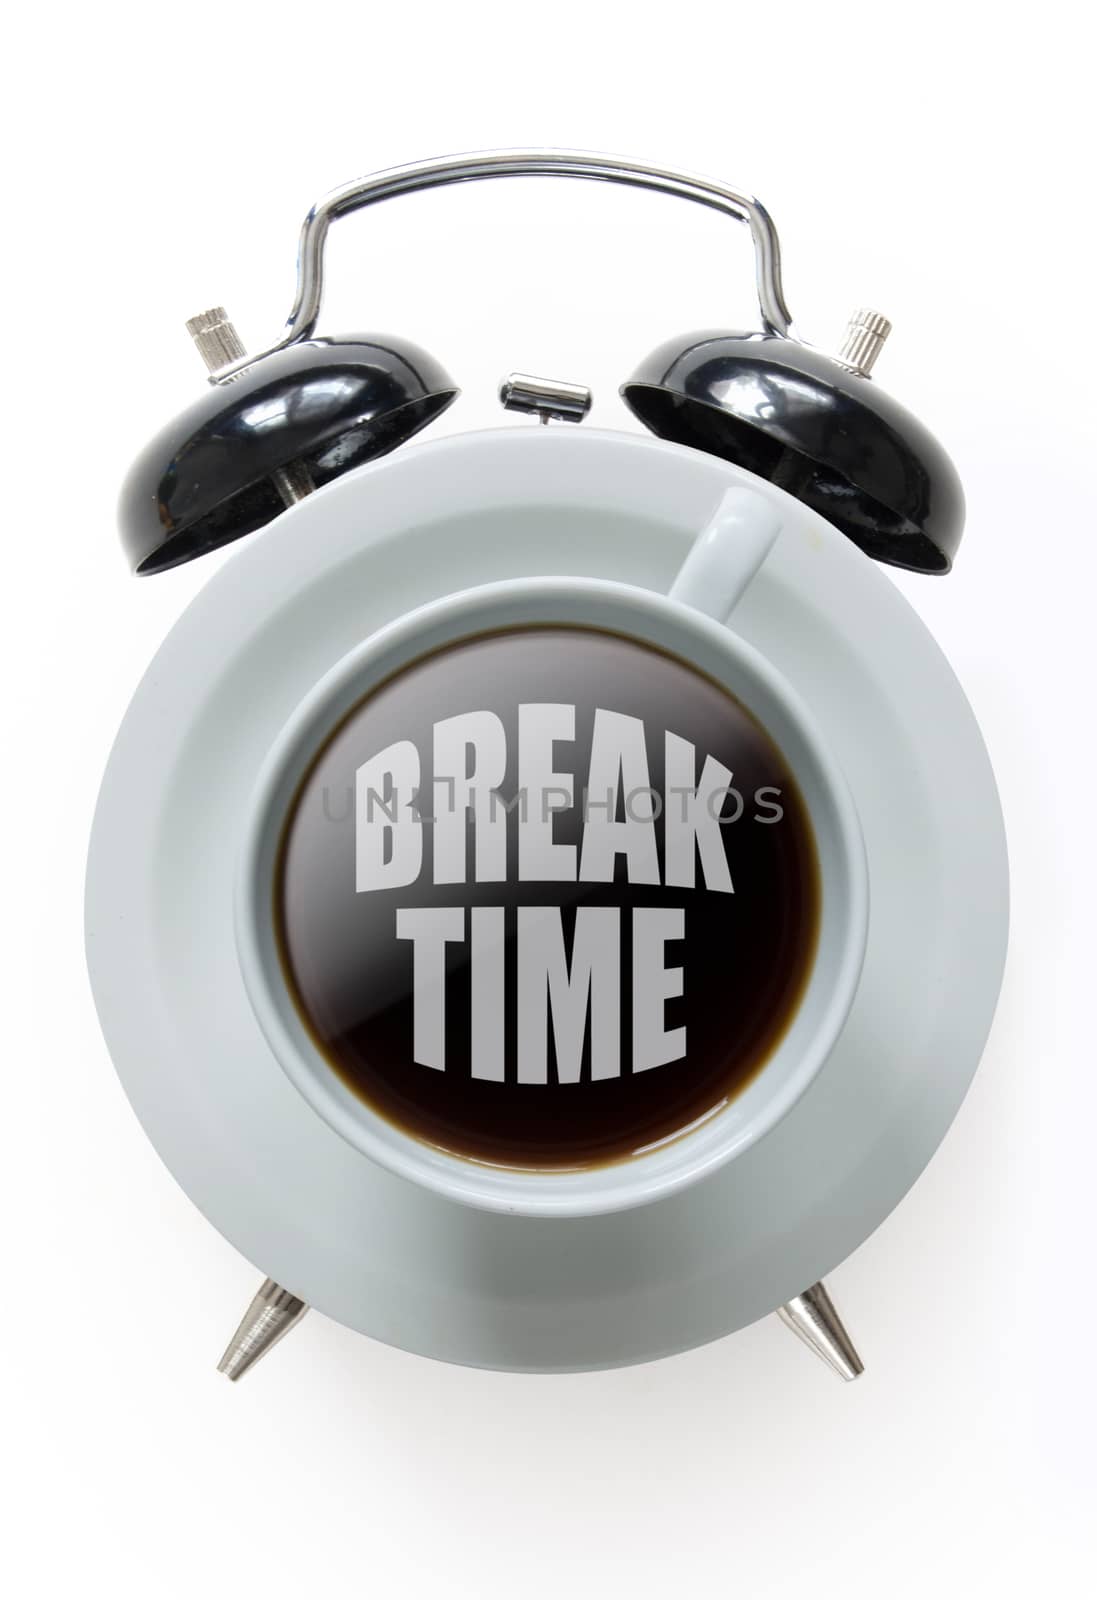 Coffee break time by unikpix